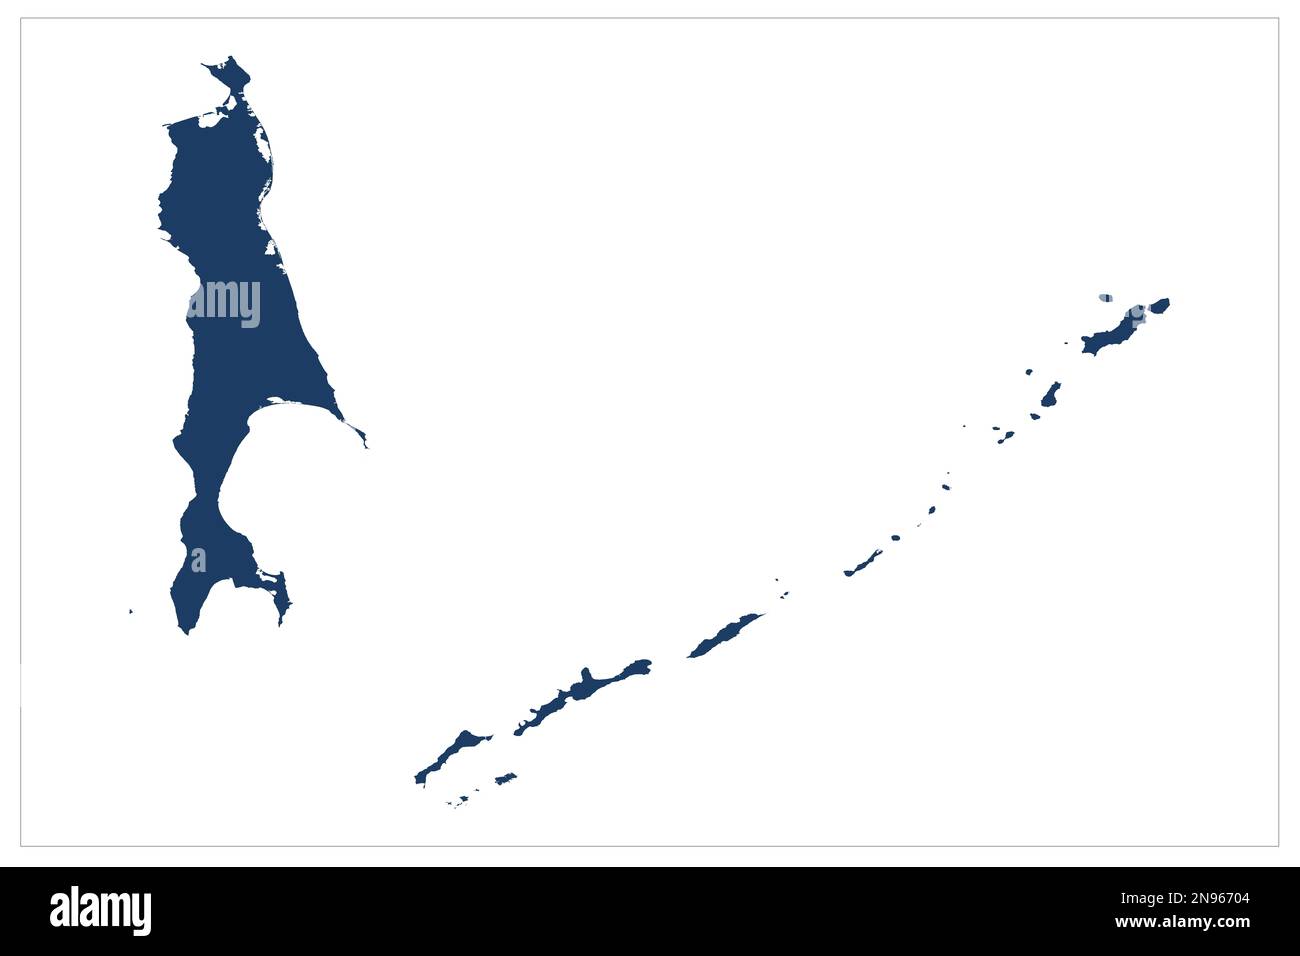 Republik Sakha, Jakutia-Sakha|Jakutsk, Respublika Sakha , Sachalin Russland Oblast Illustration der Landesprovinz Russland auf weißem Hintergrund mit blauer Farbe Stockfoto